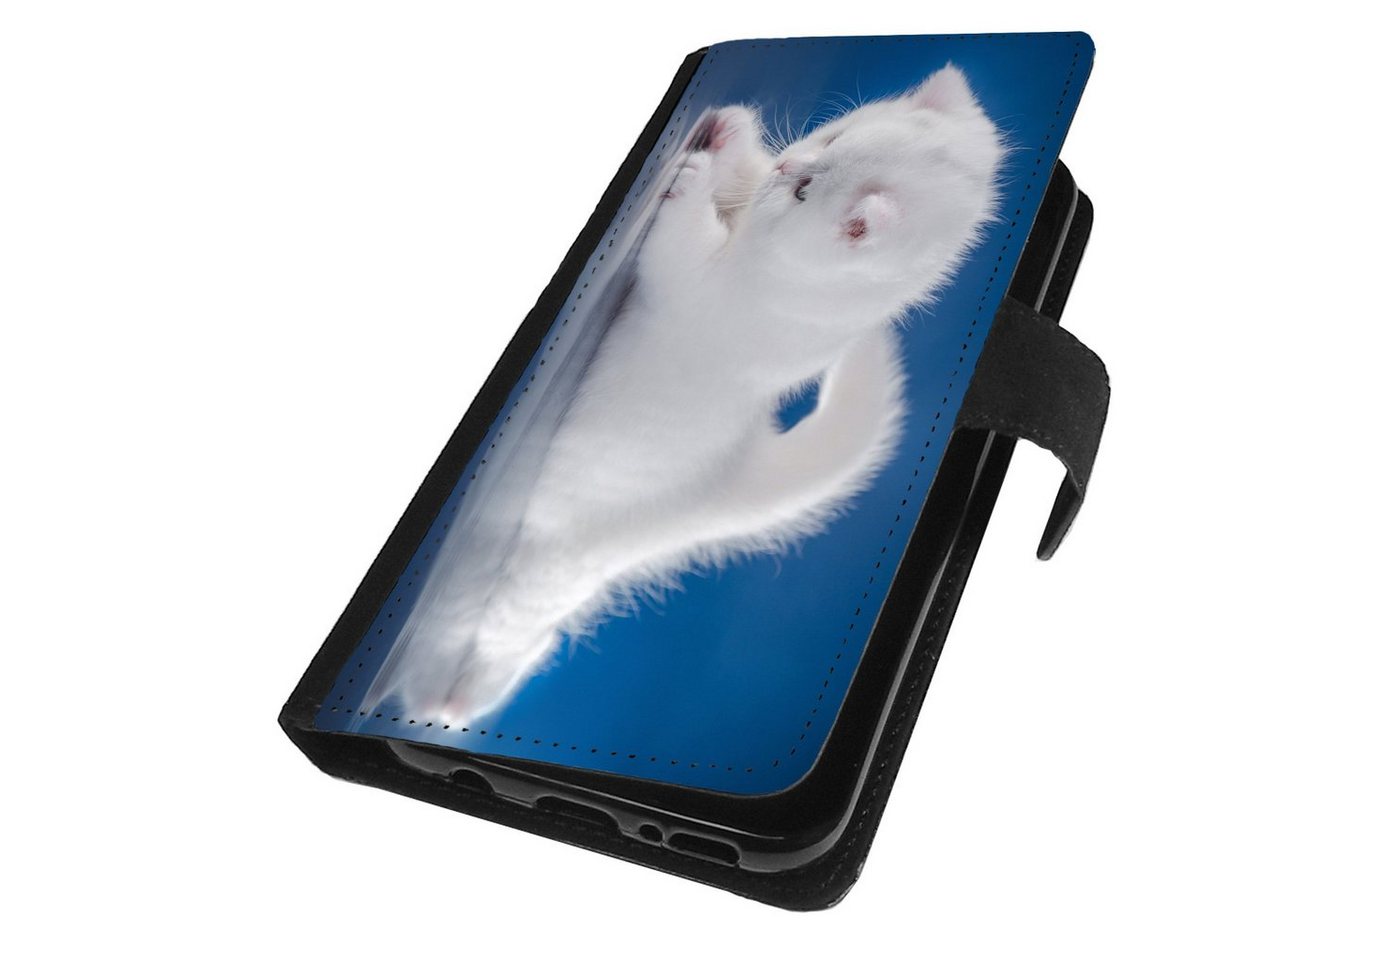 Traumhuelle Smartphone-Hülle MOTIV 121 Katze Blau Weiß Schutz Hülle für Samsung Galaxy Handy, Smartphone Handyhülle Handytasche Schutz Case Klappcase Cover Etui von Traumhuelle